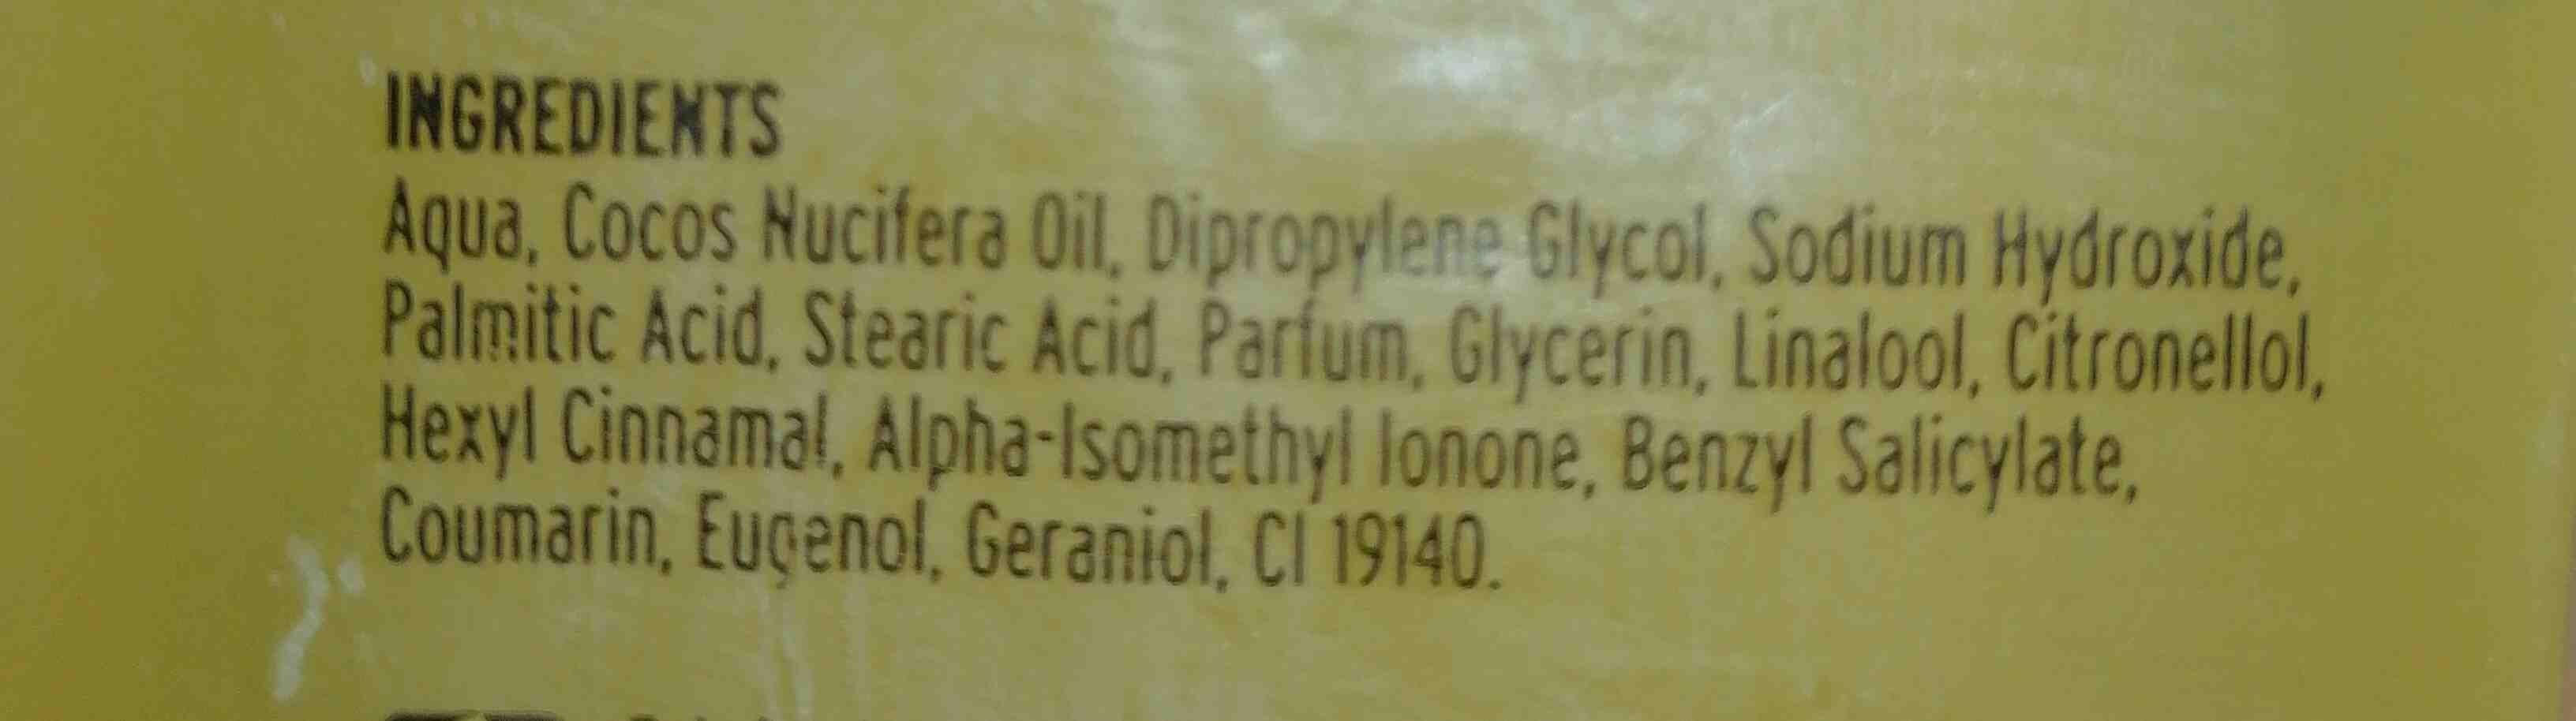 Belle glicerina jabon - Ингредиенты - en